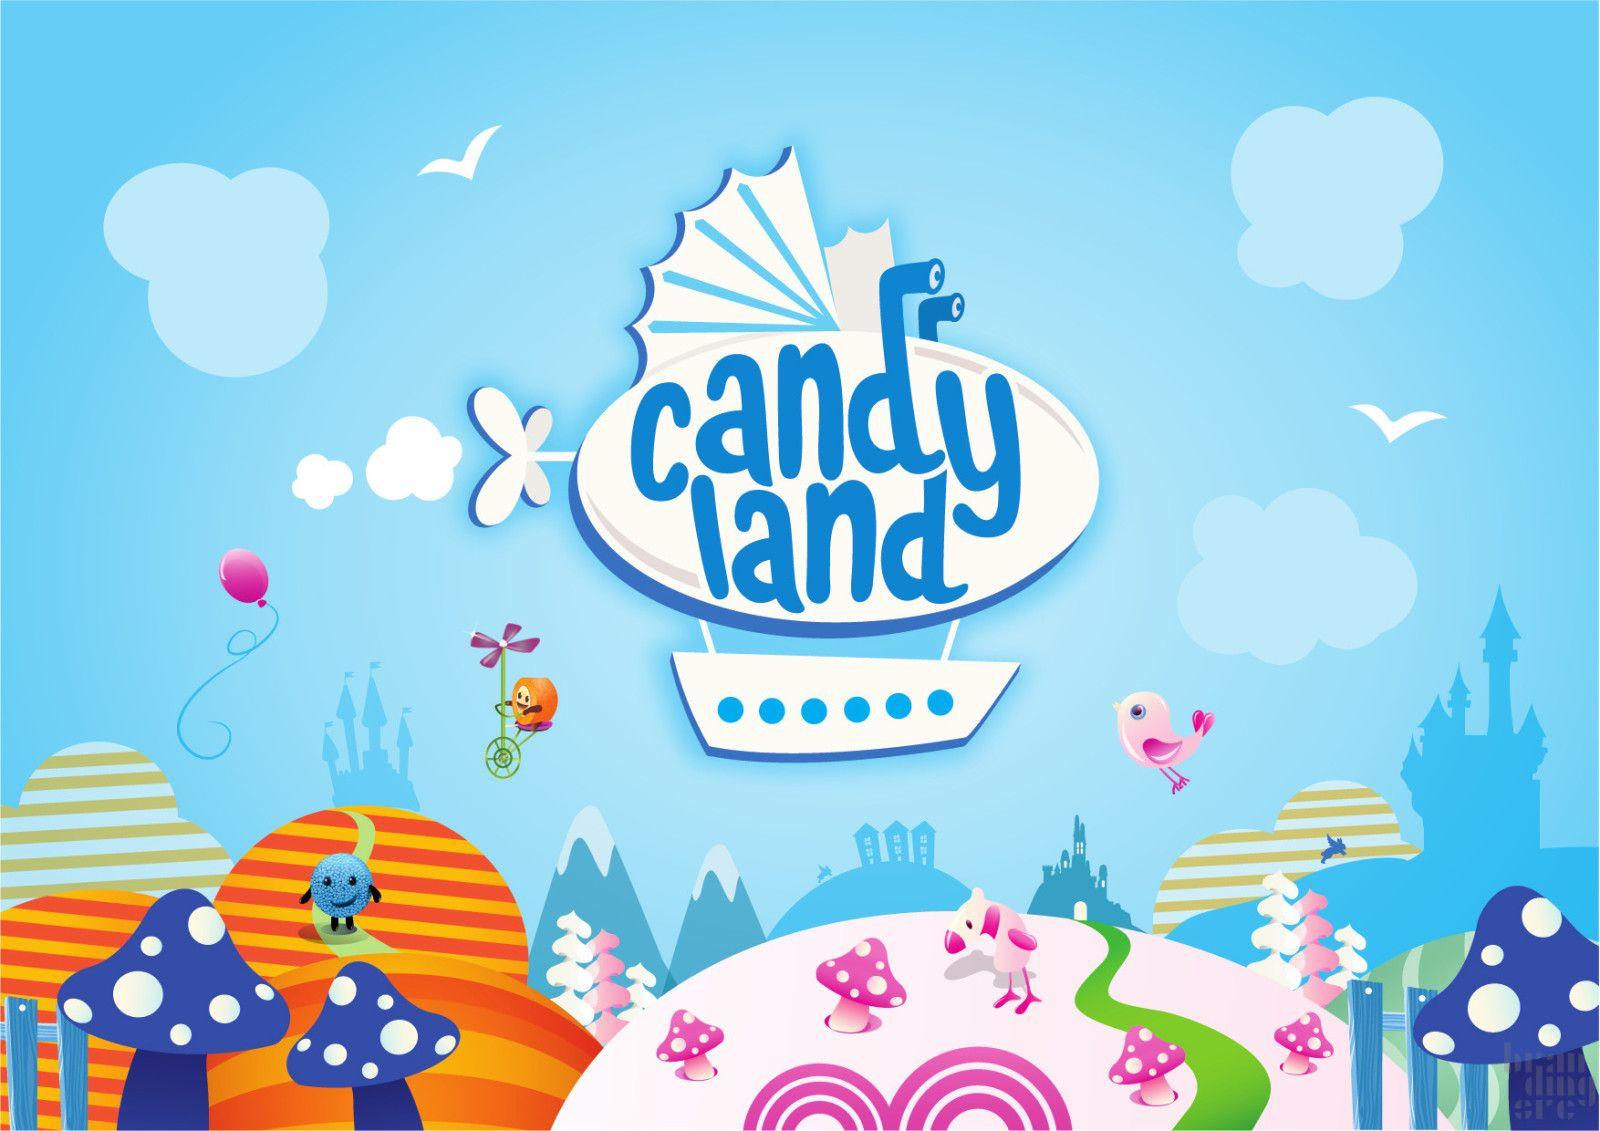 Candyland Logo - The Branding Source: New logo: Candyland